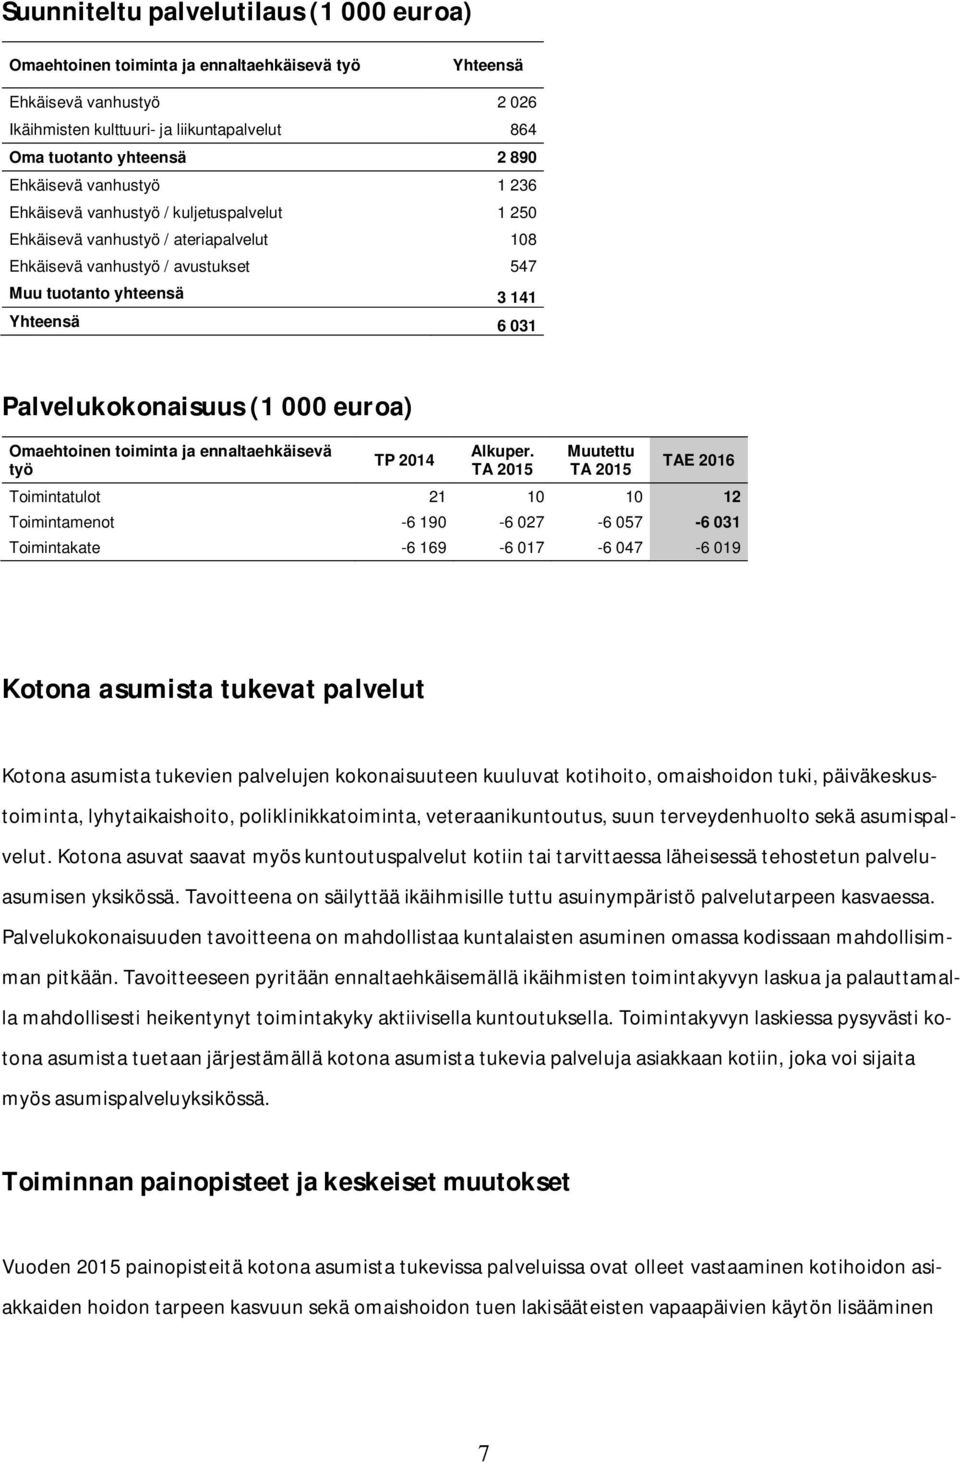 Palvelukokonaisuus (1 000 euroa) Omaehtoinen toiminta ja ennaltaehkäisevä työ TP 2014 Alkuper.